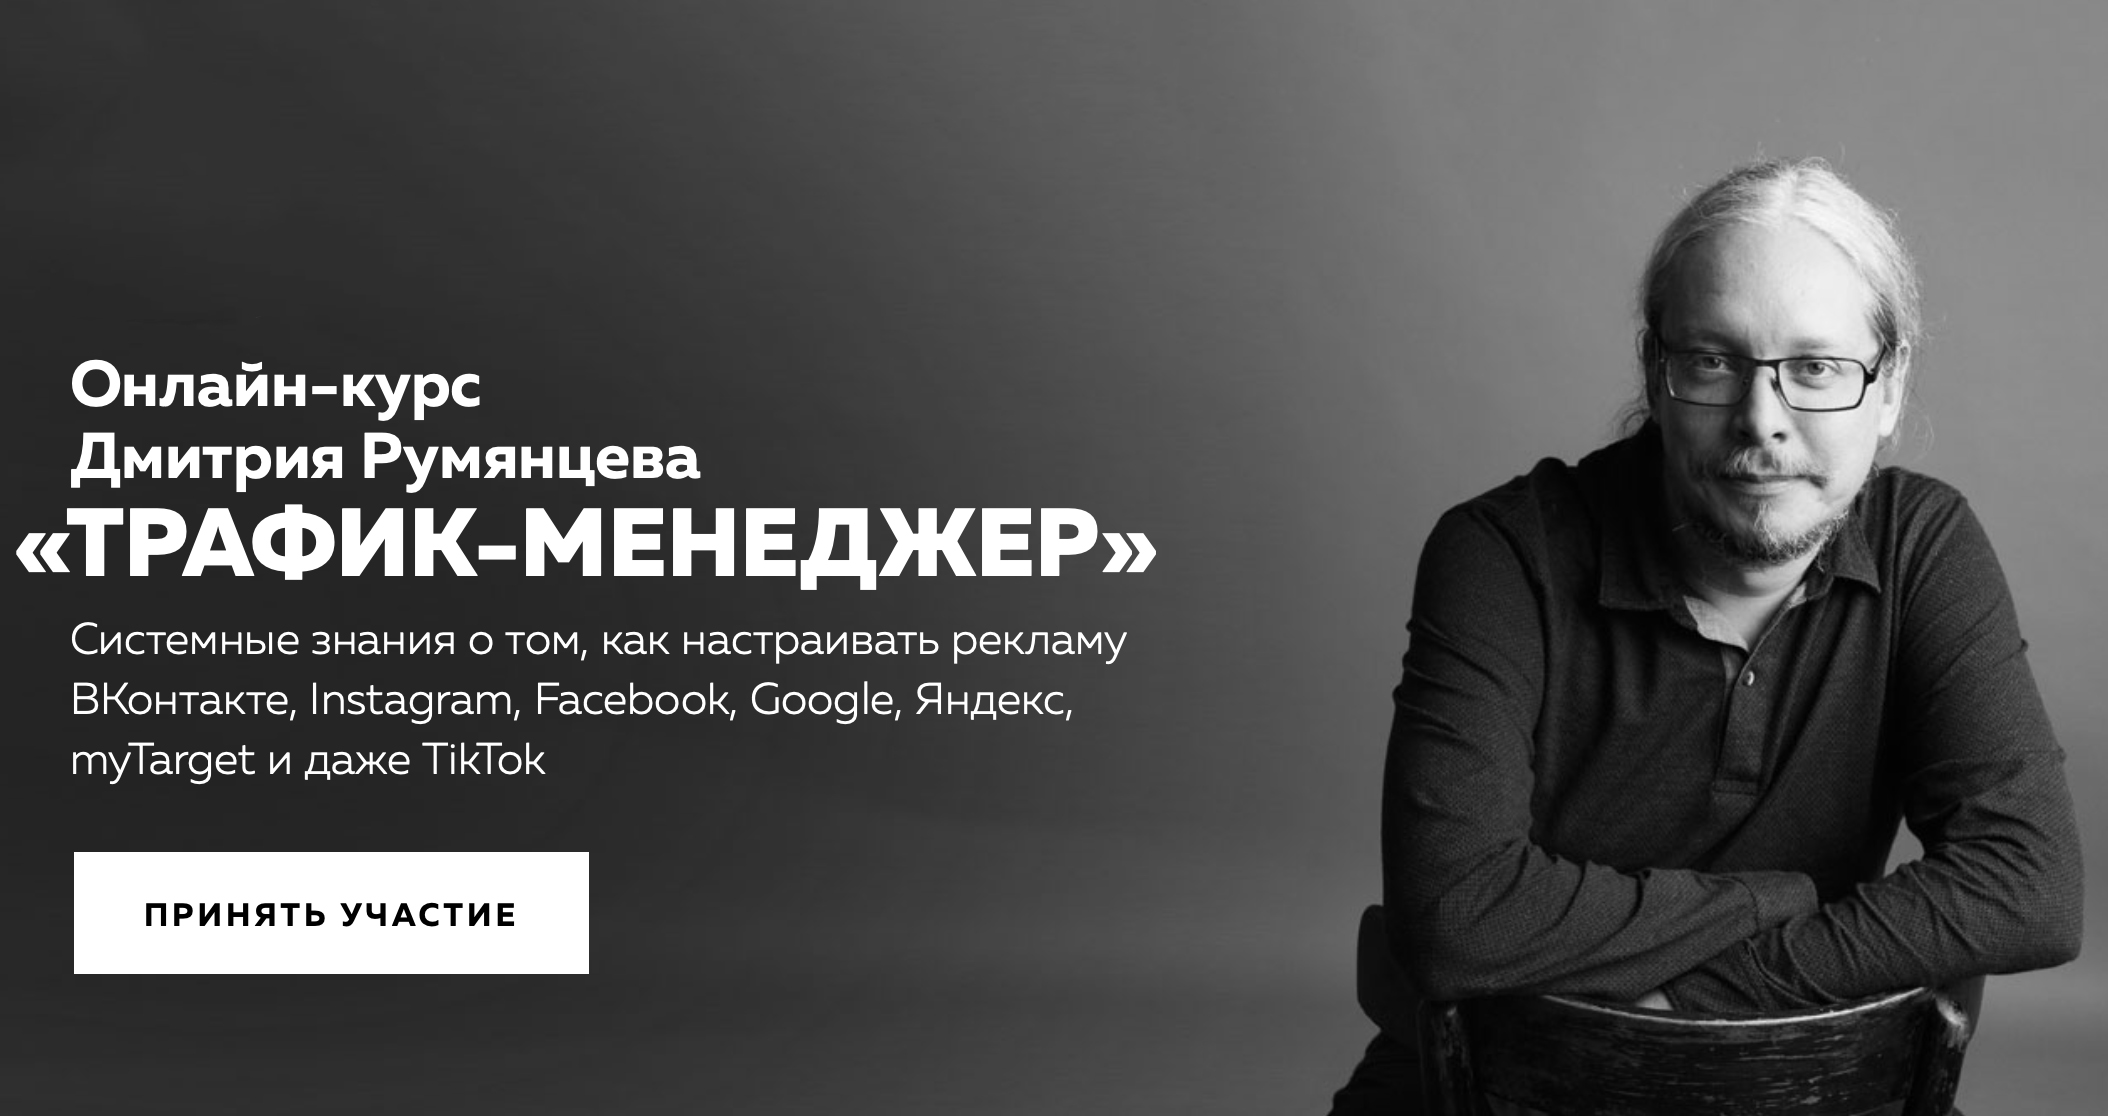 Онлайн-курс Дмитрия Румянцева «Трафик-менеджер» баннер